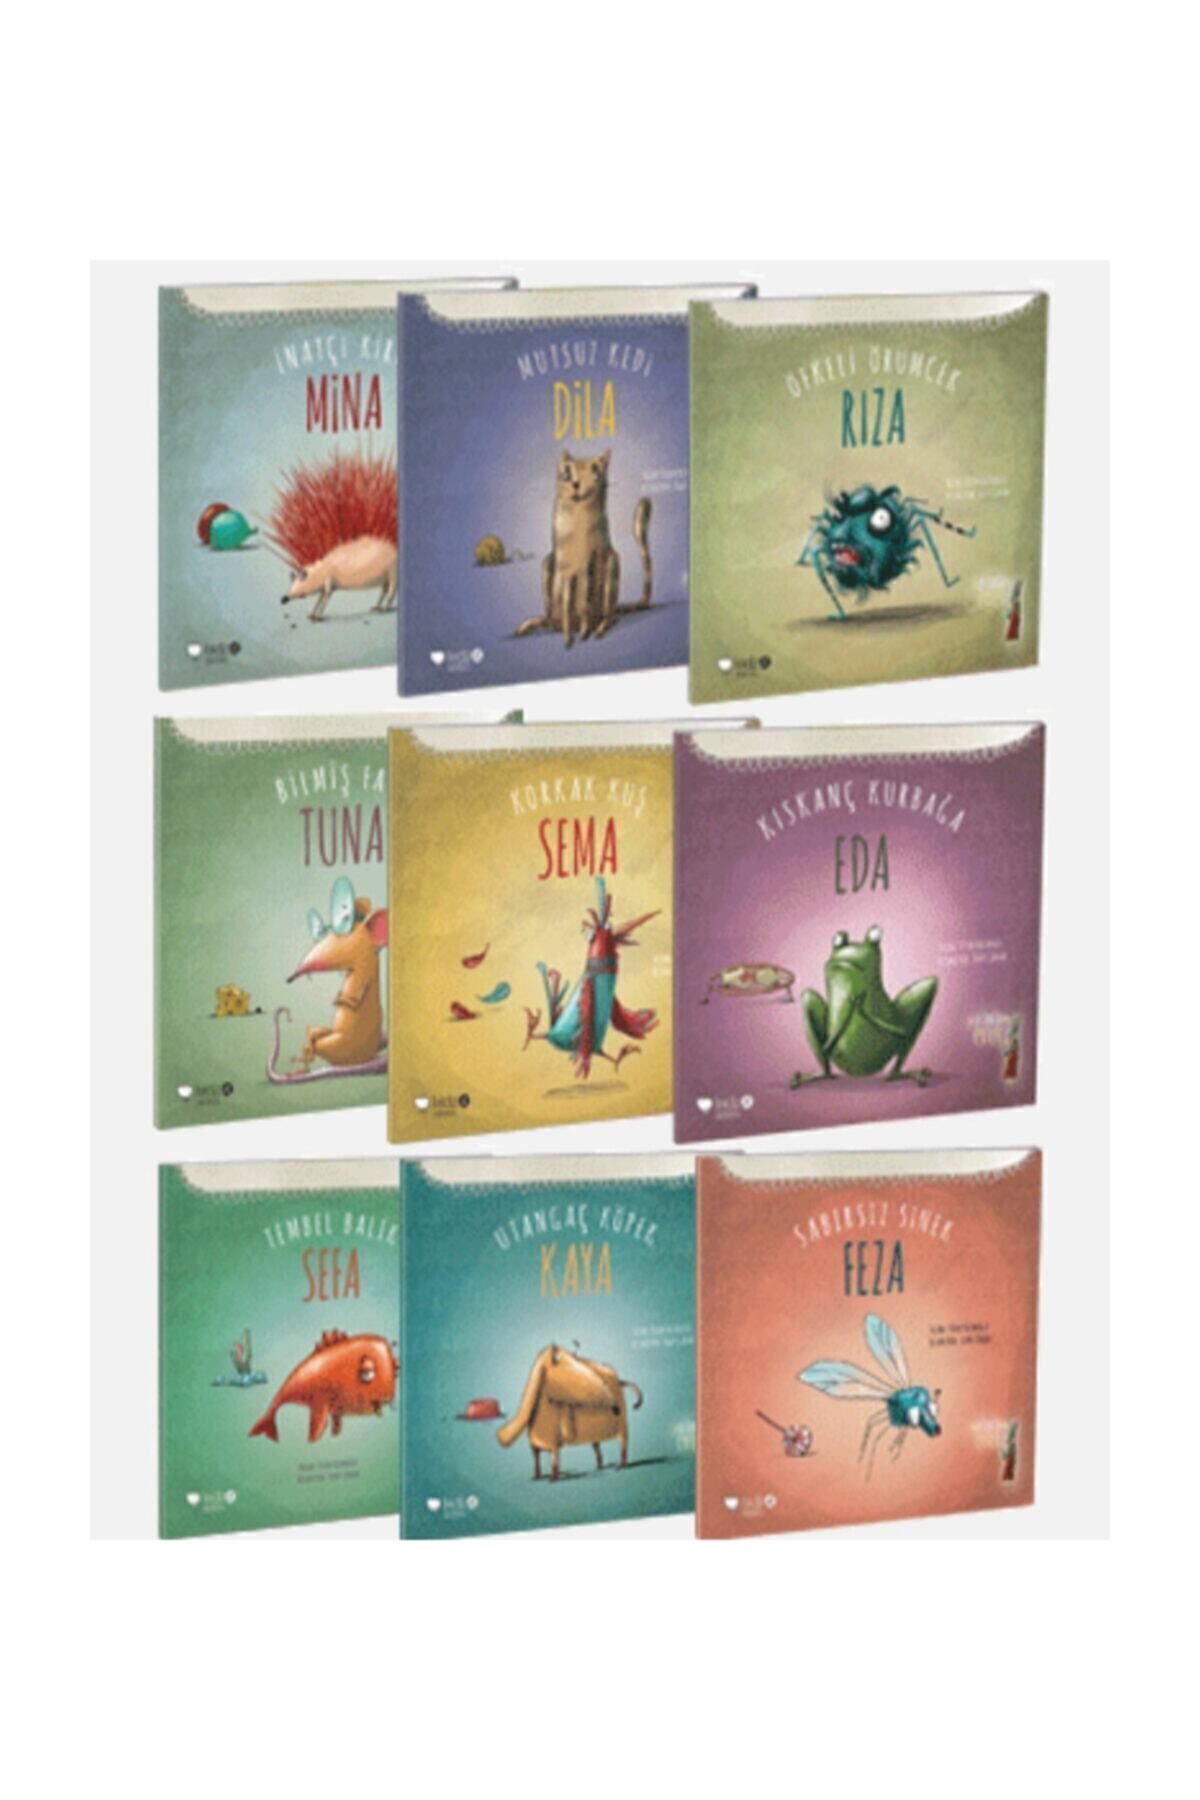 Redhouse Kidz Yayınları Leyla Fonten Serisi 9 Kitap Set, Feza,rıza,mina,dila,tuna, Sema,eda,sefa,kaya